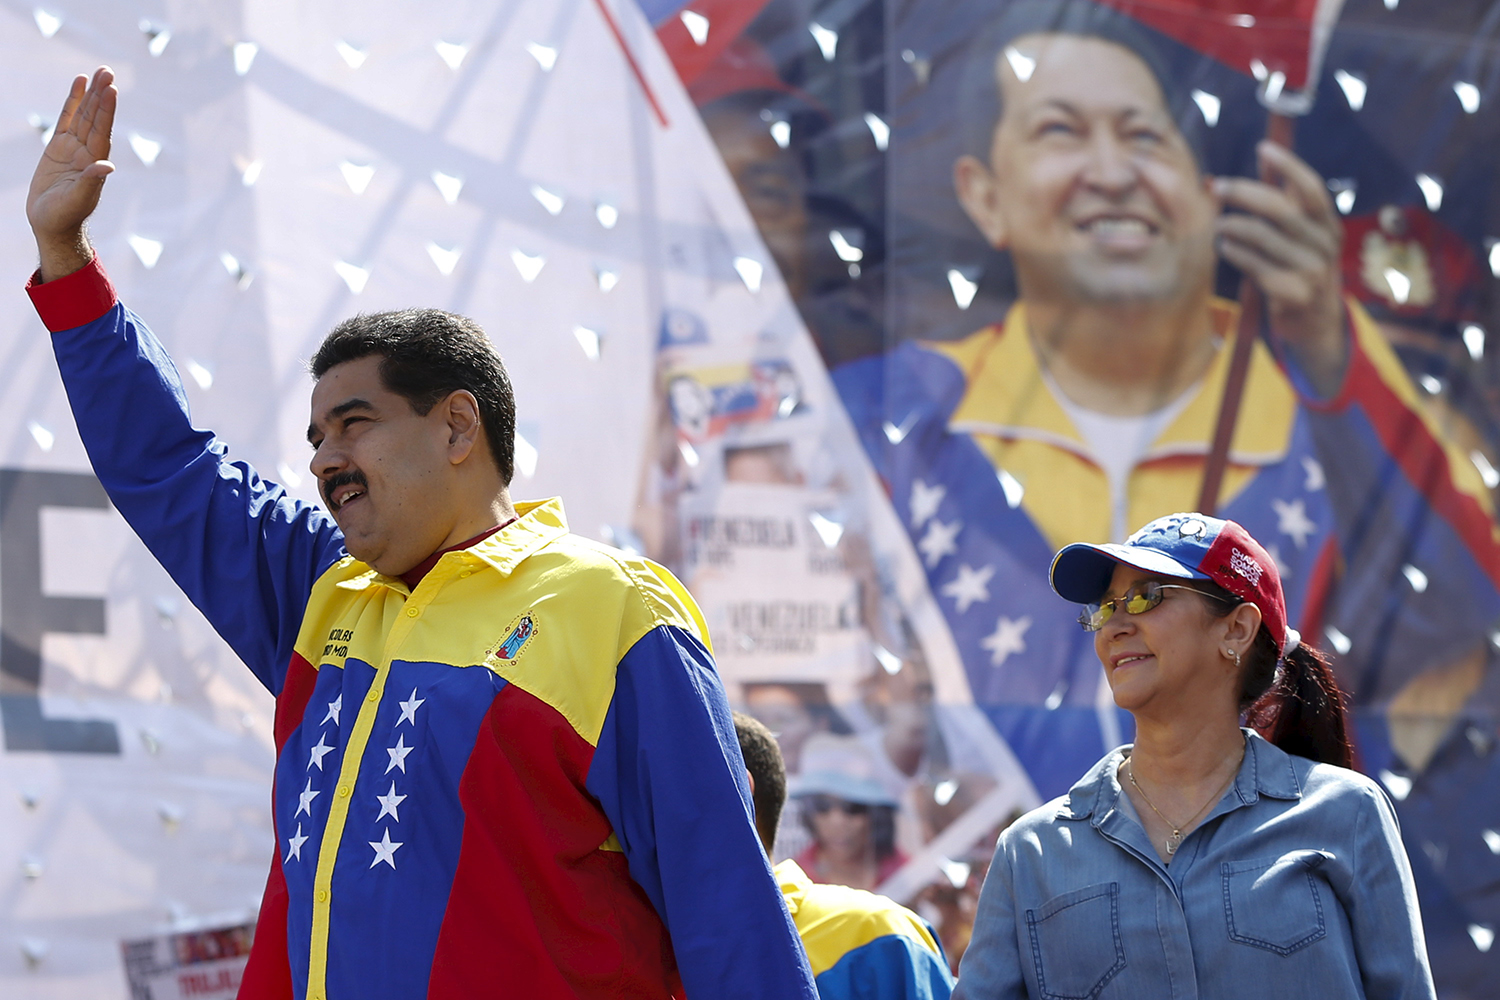 El Gobierno de Venezuela encarga una película y una serie sobre Chávez